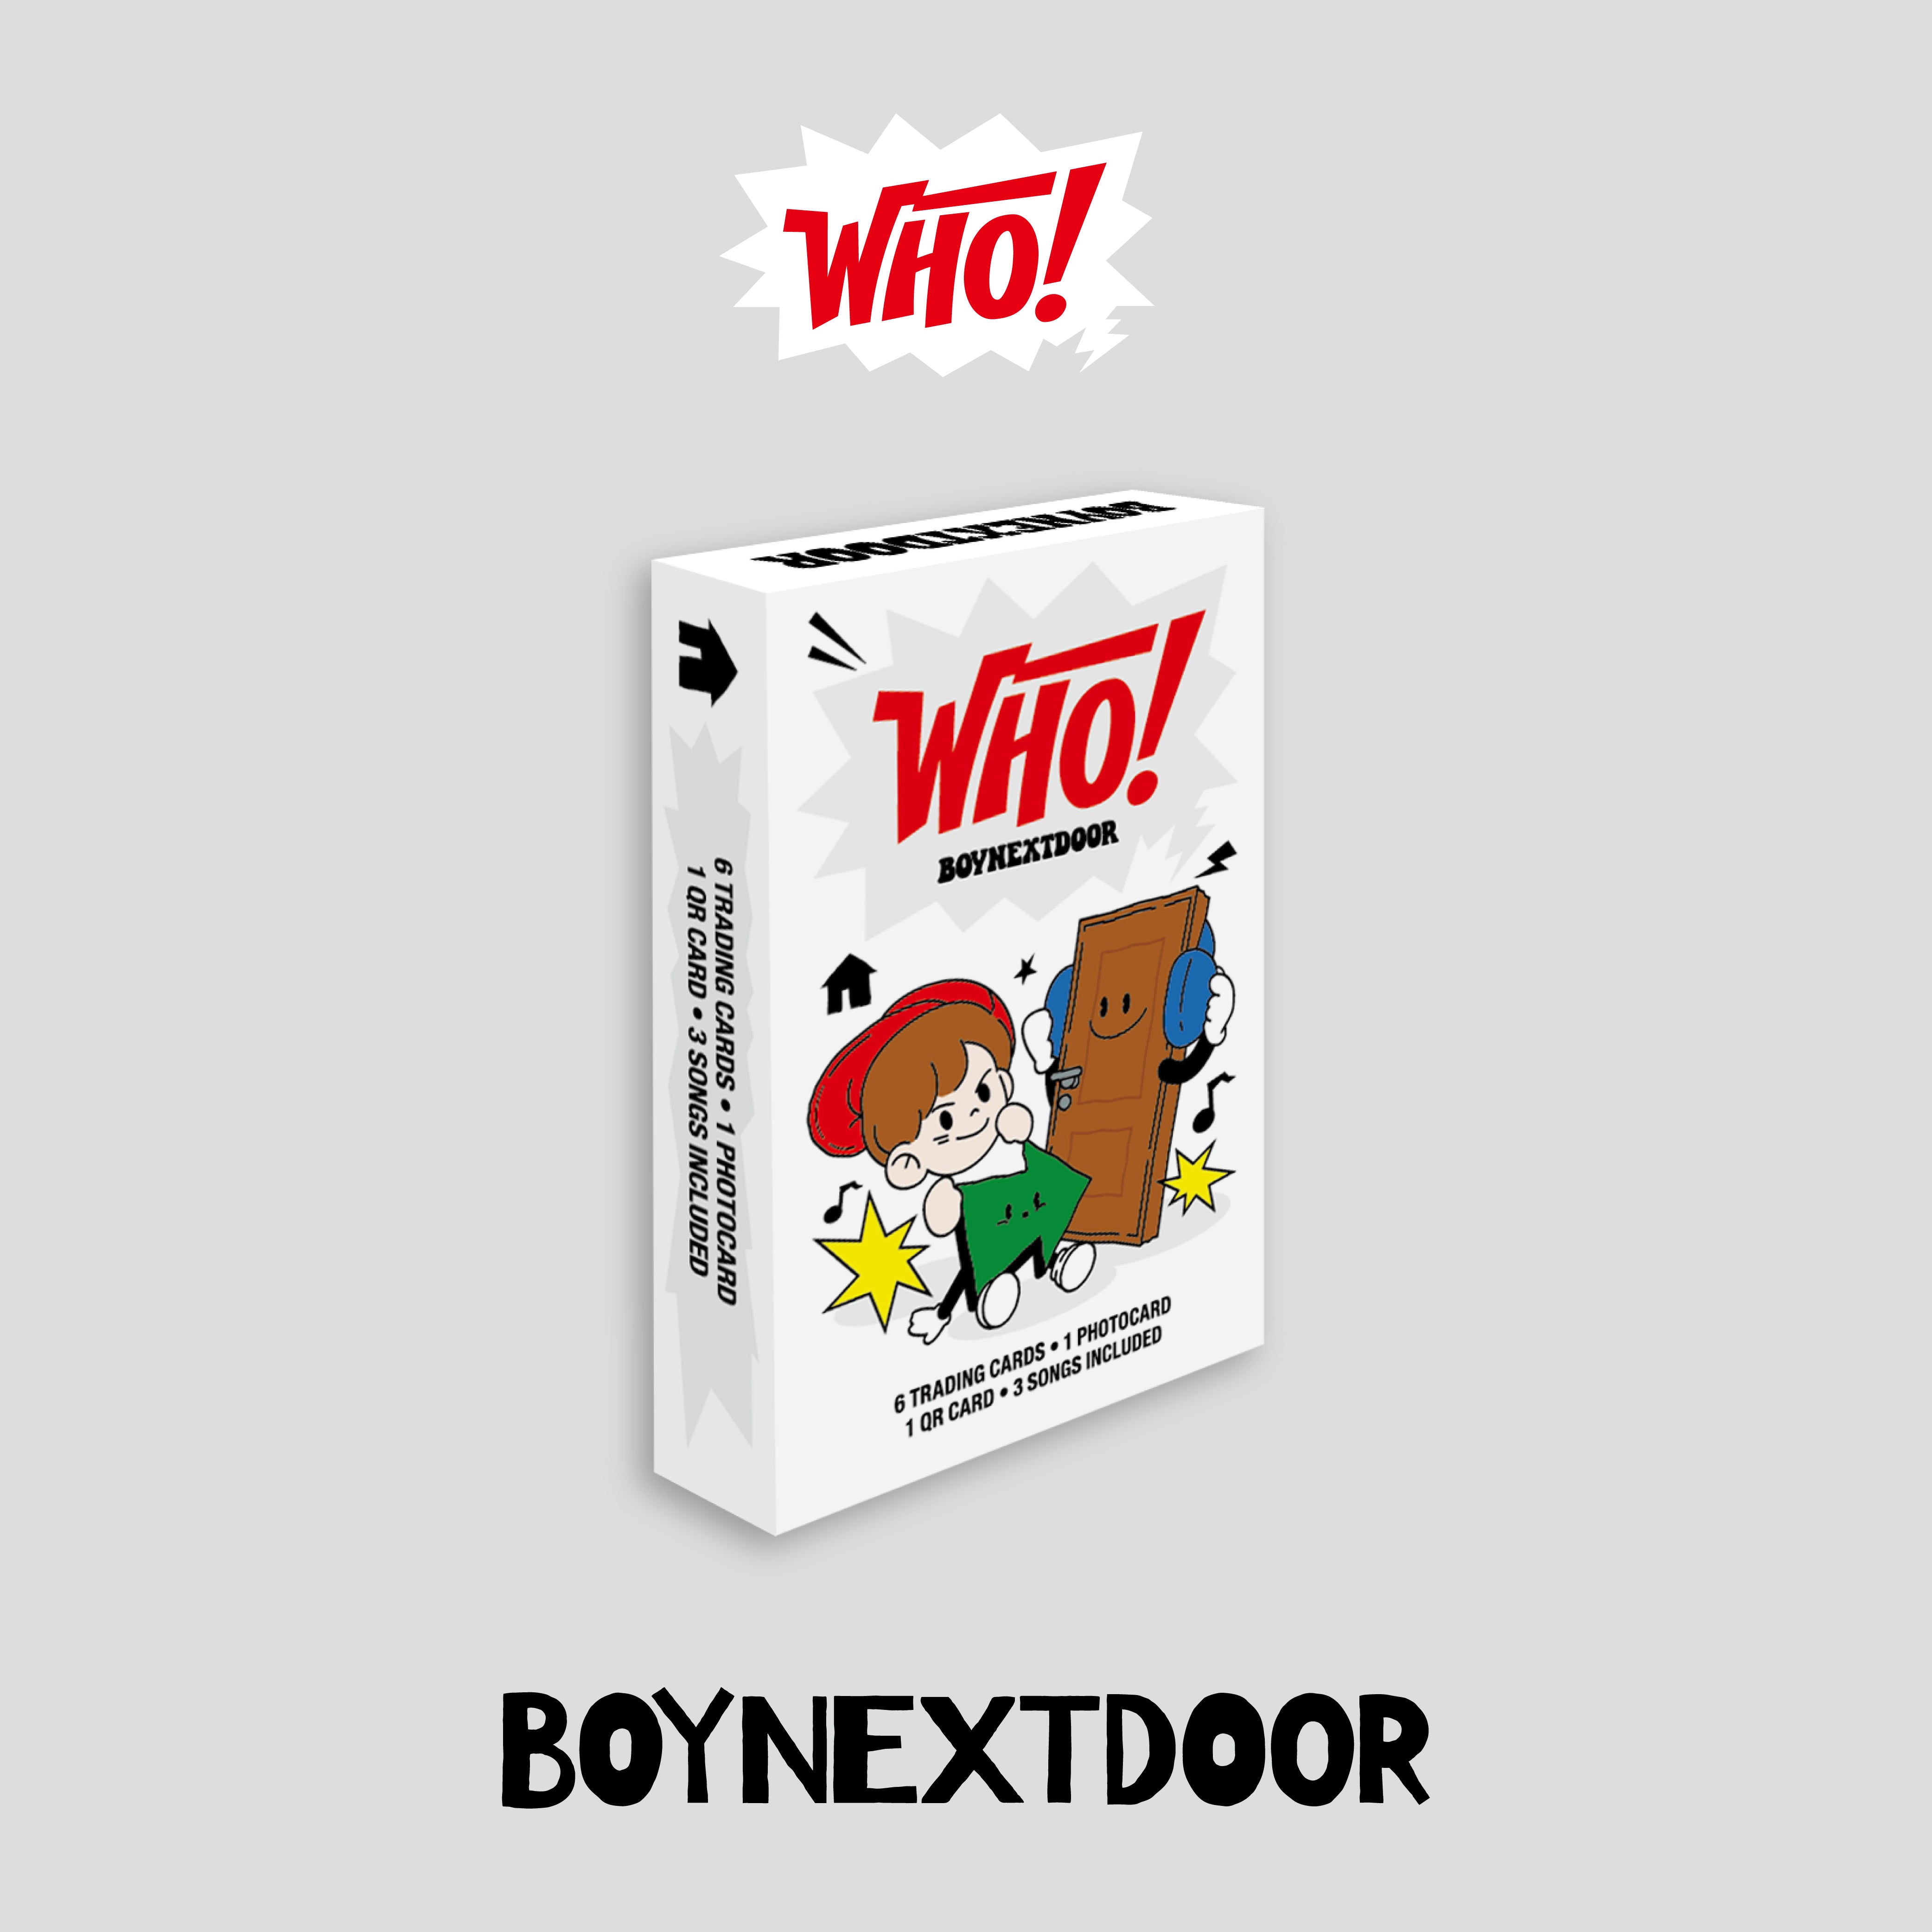 BOYNEXTDOOR – 'WHO!' (Weverse Albums ver.) – Kpop Planet